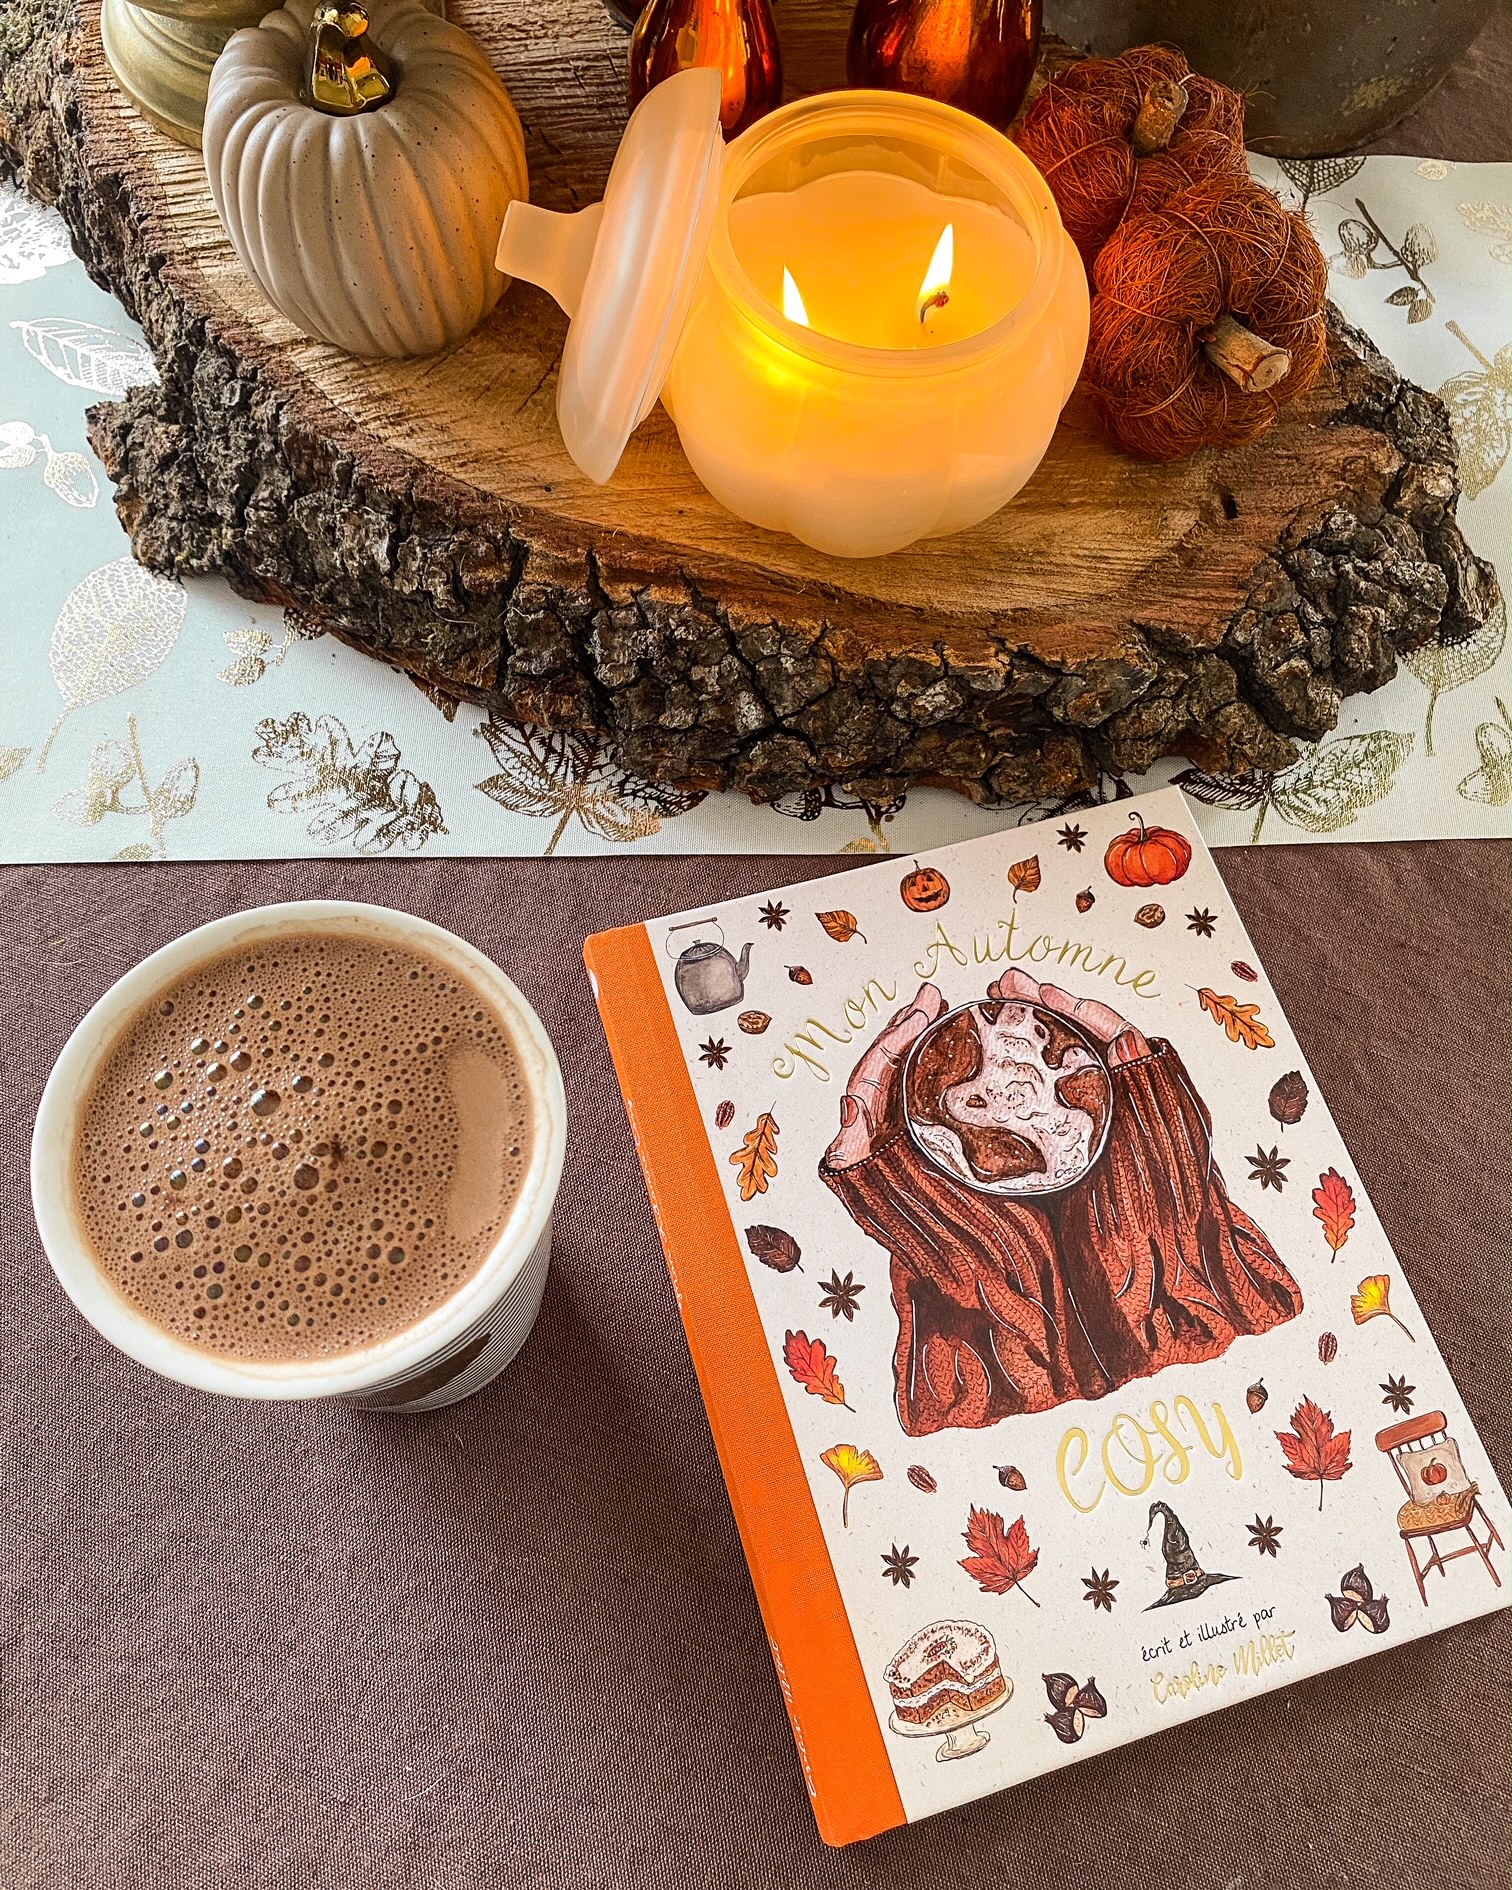 Le livre Mon automne cosy de Caroline Millet sur une nape chocolat ; à côté un mug de chocolat chaud ; en haut un centre de table fait d'un rondin de bois sur lequel est posée une bougie allumée en forme de citrouille et des petites citrouilles artificielles